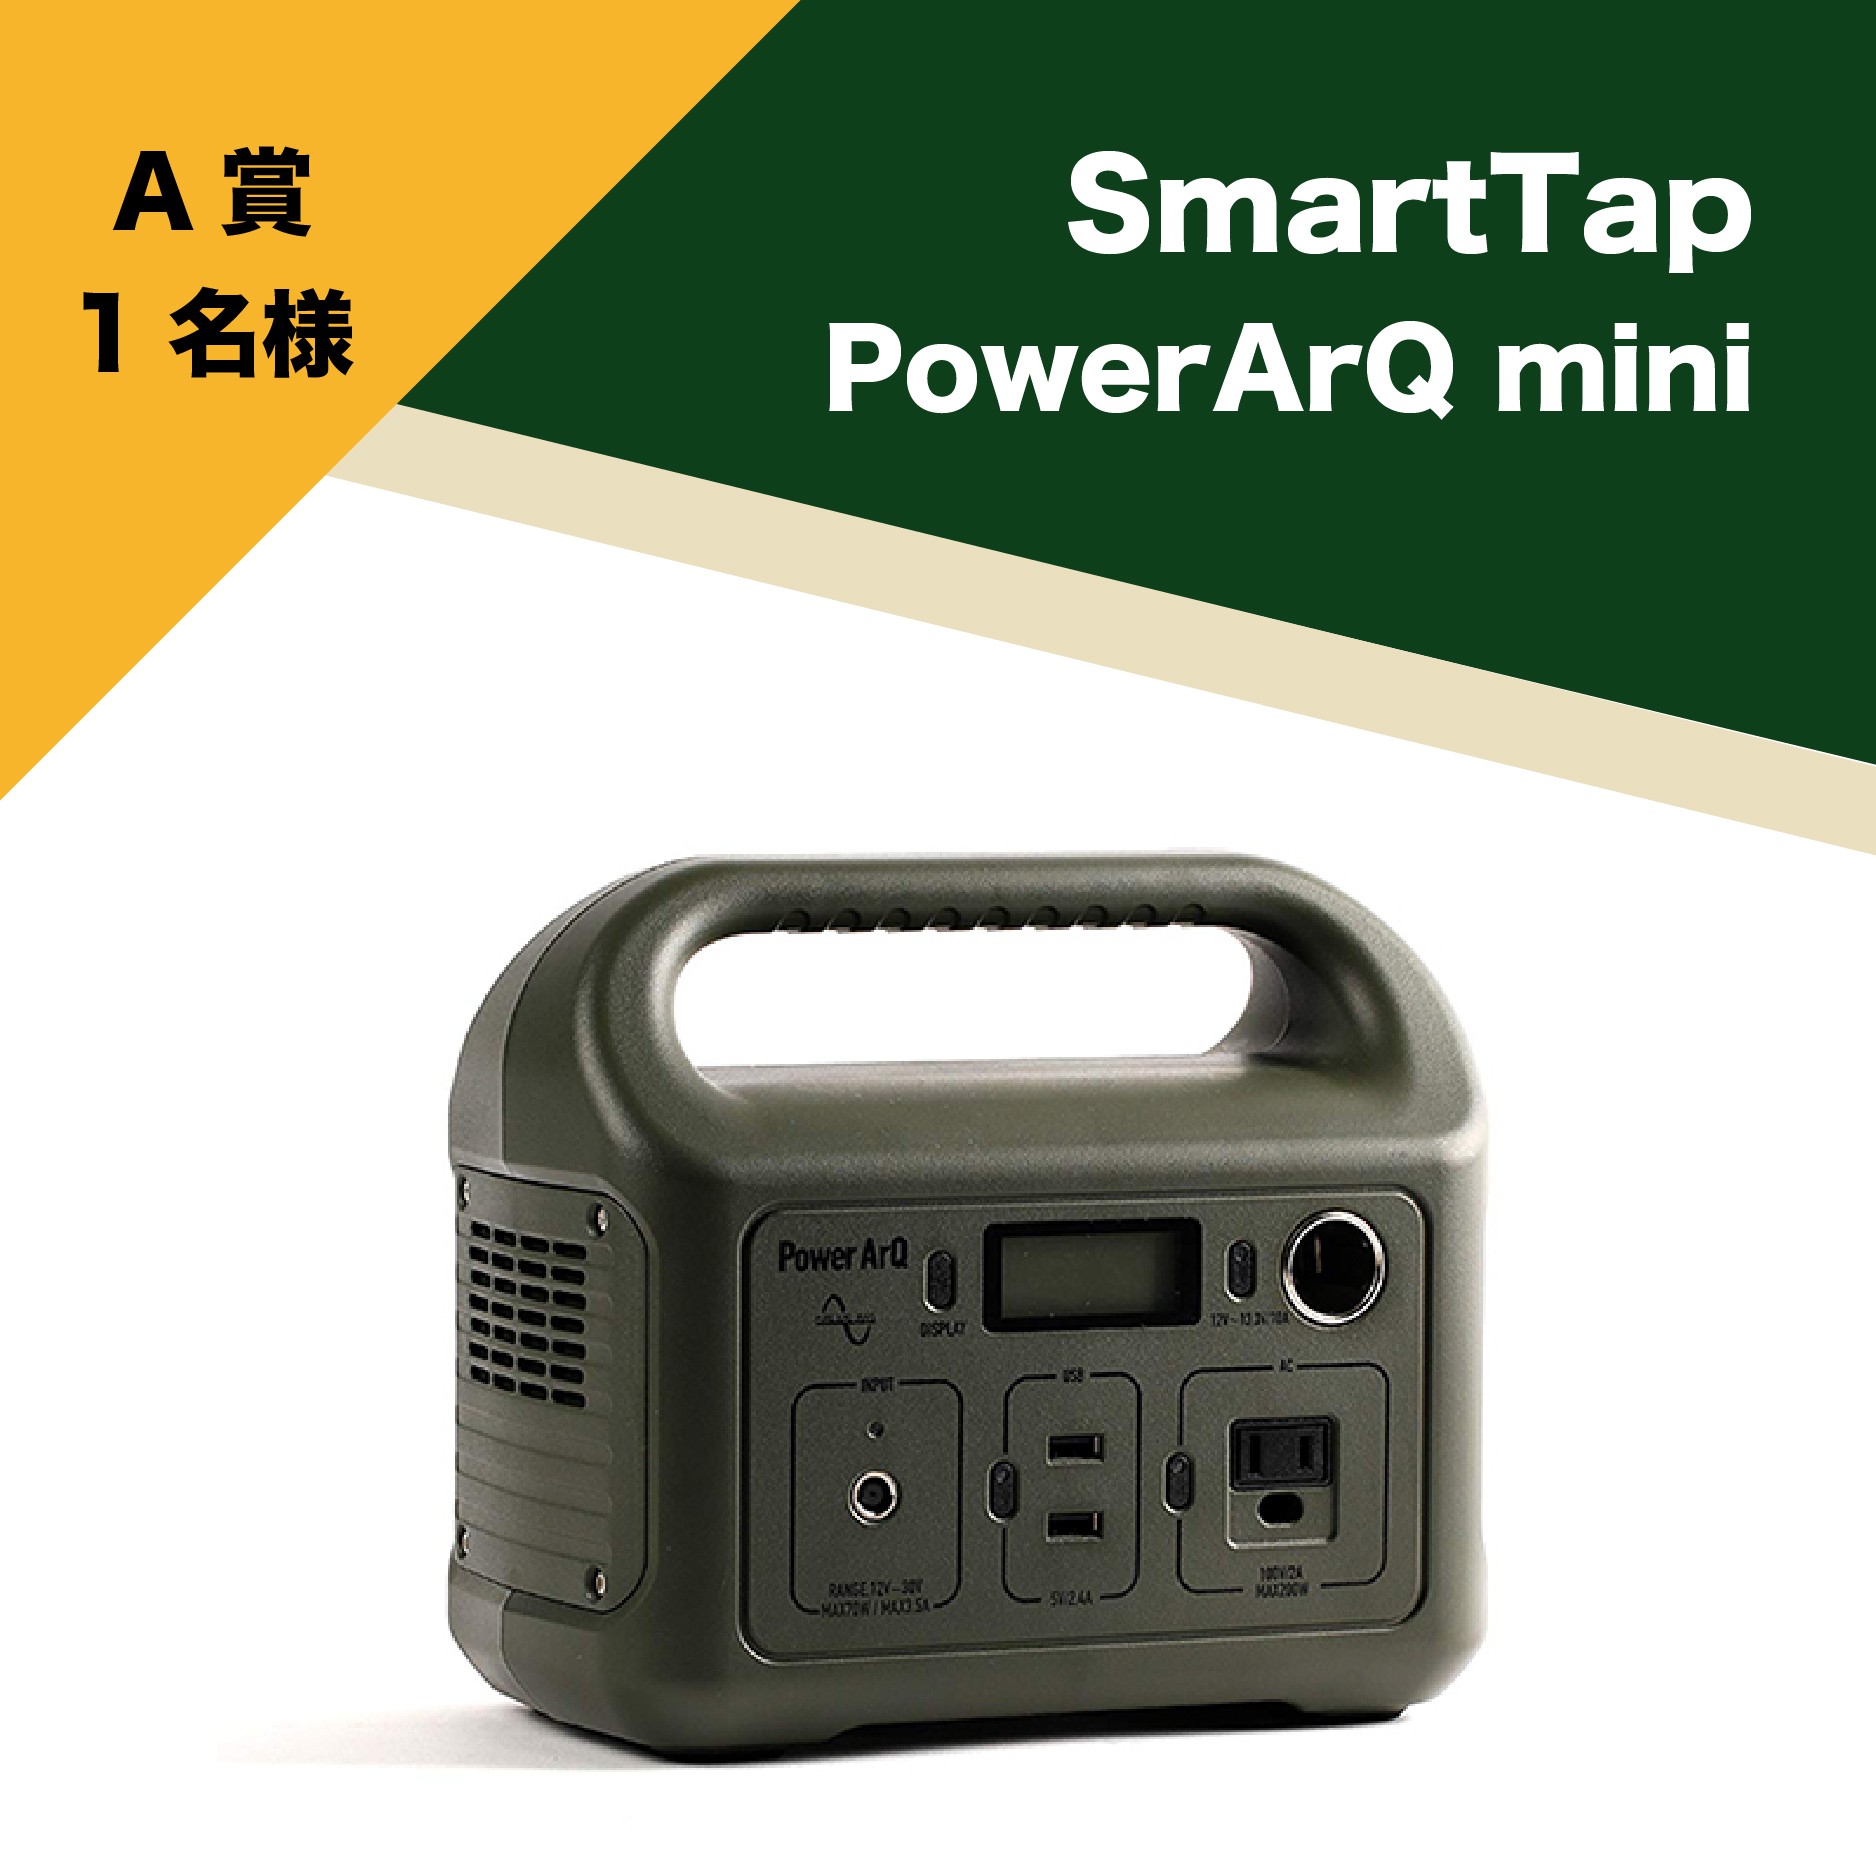 SmartTap PowerArQ mini